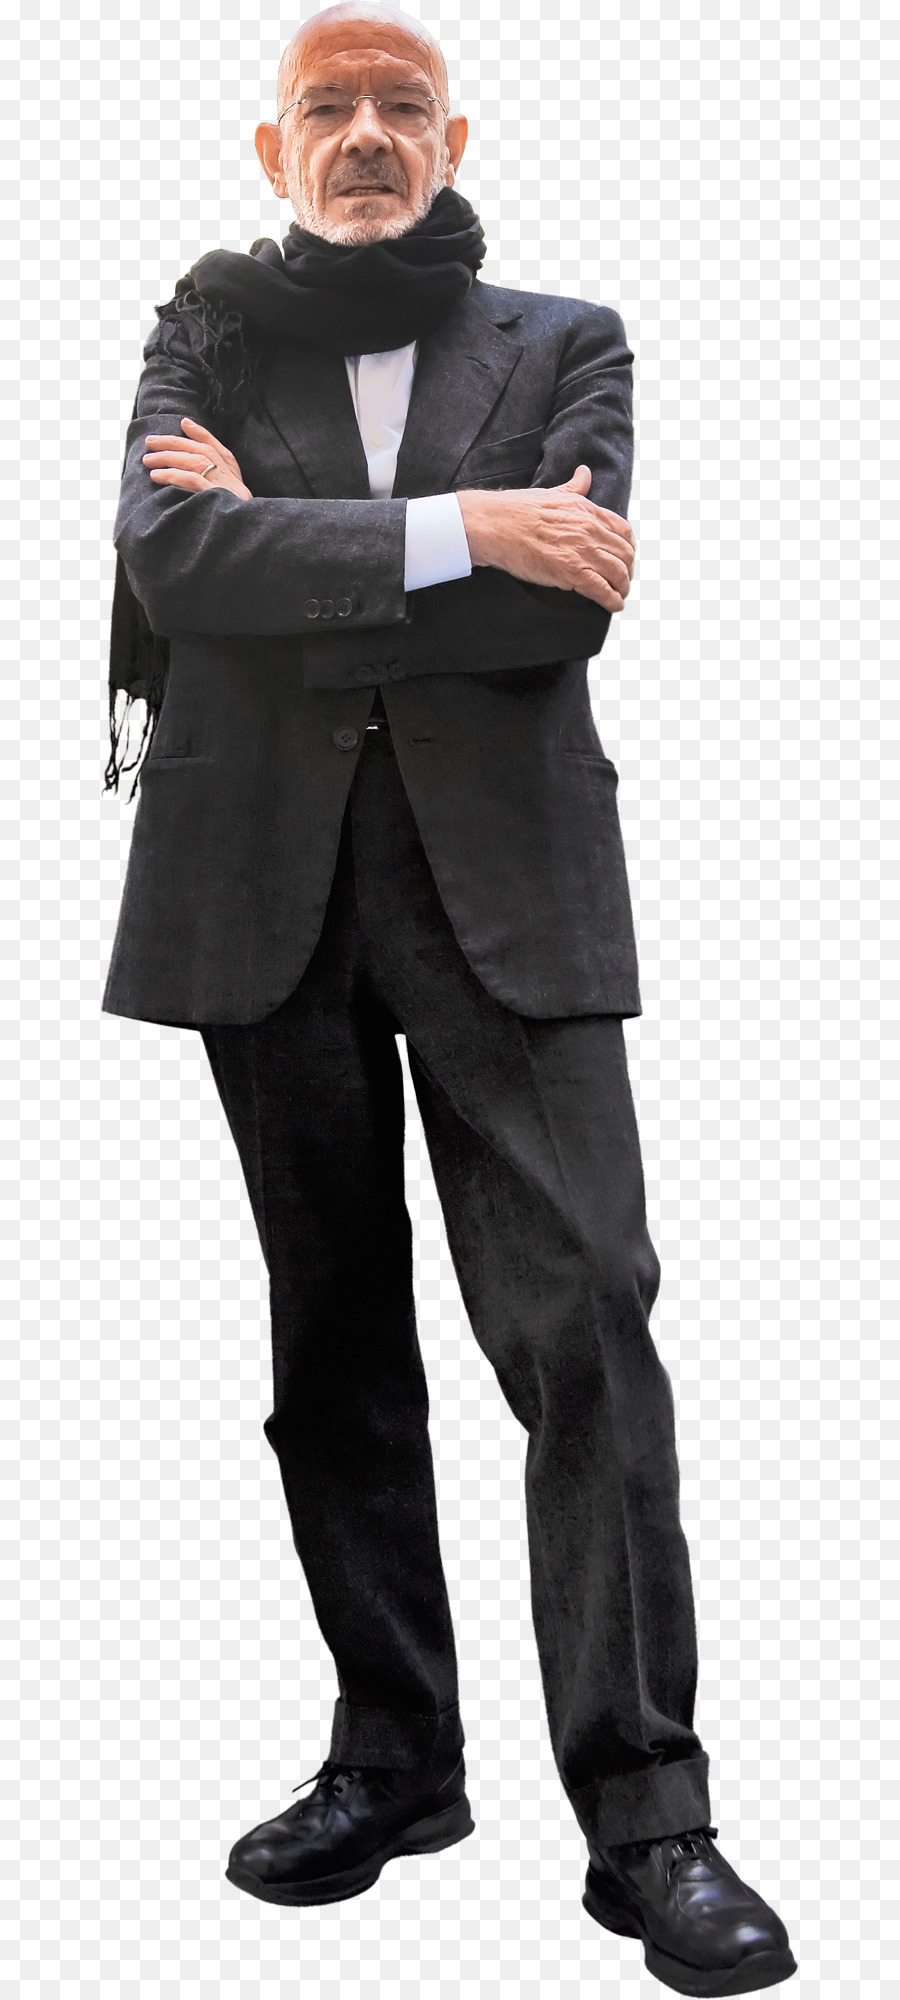 Businessperson Suit